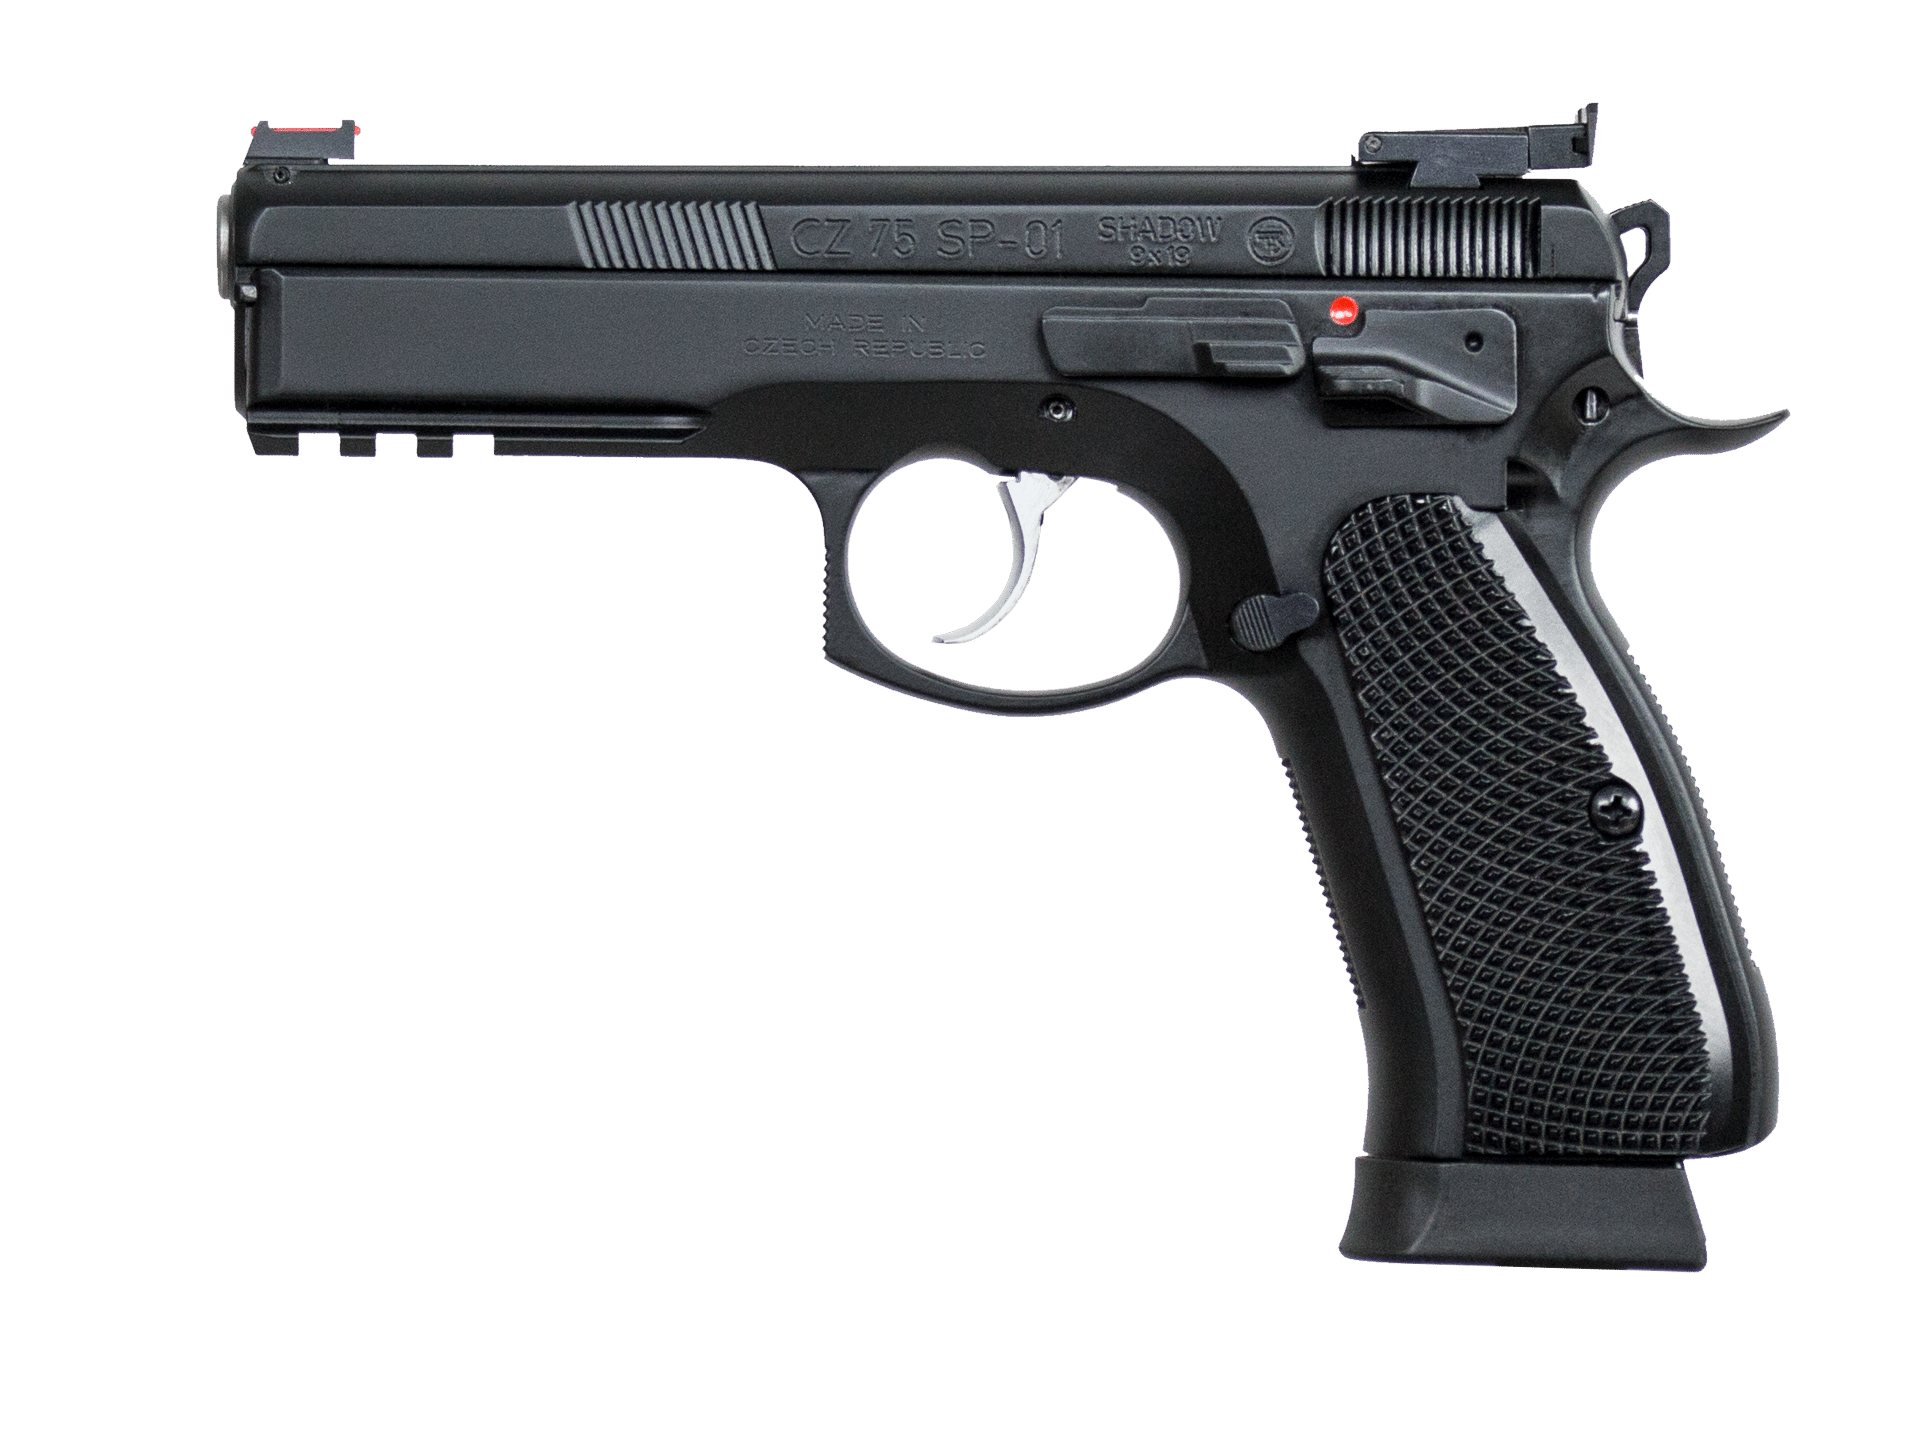 Pištolj čZ 75 SP-01 Shadow cal. 9mm Luger